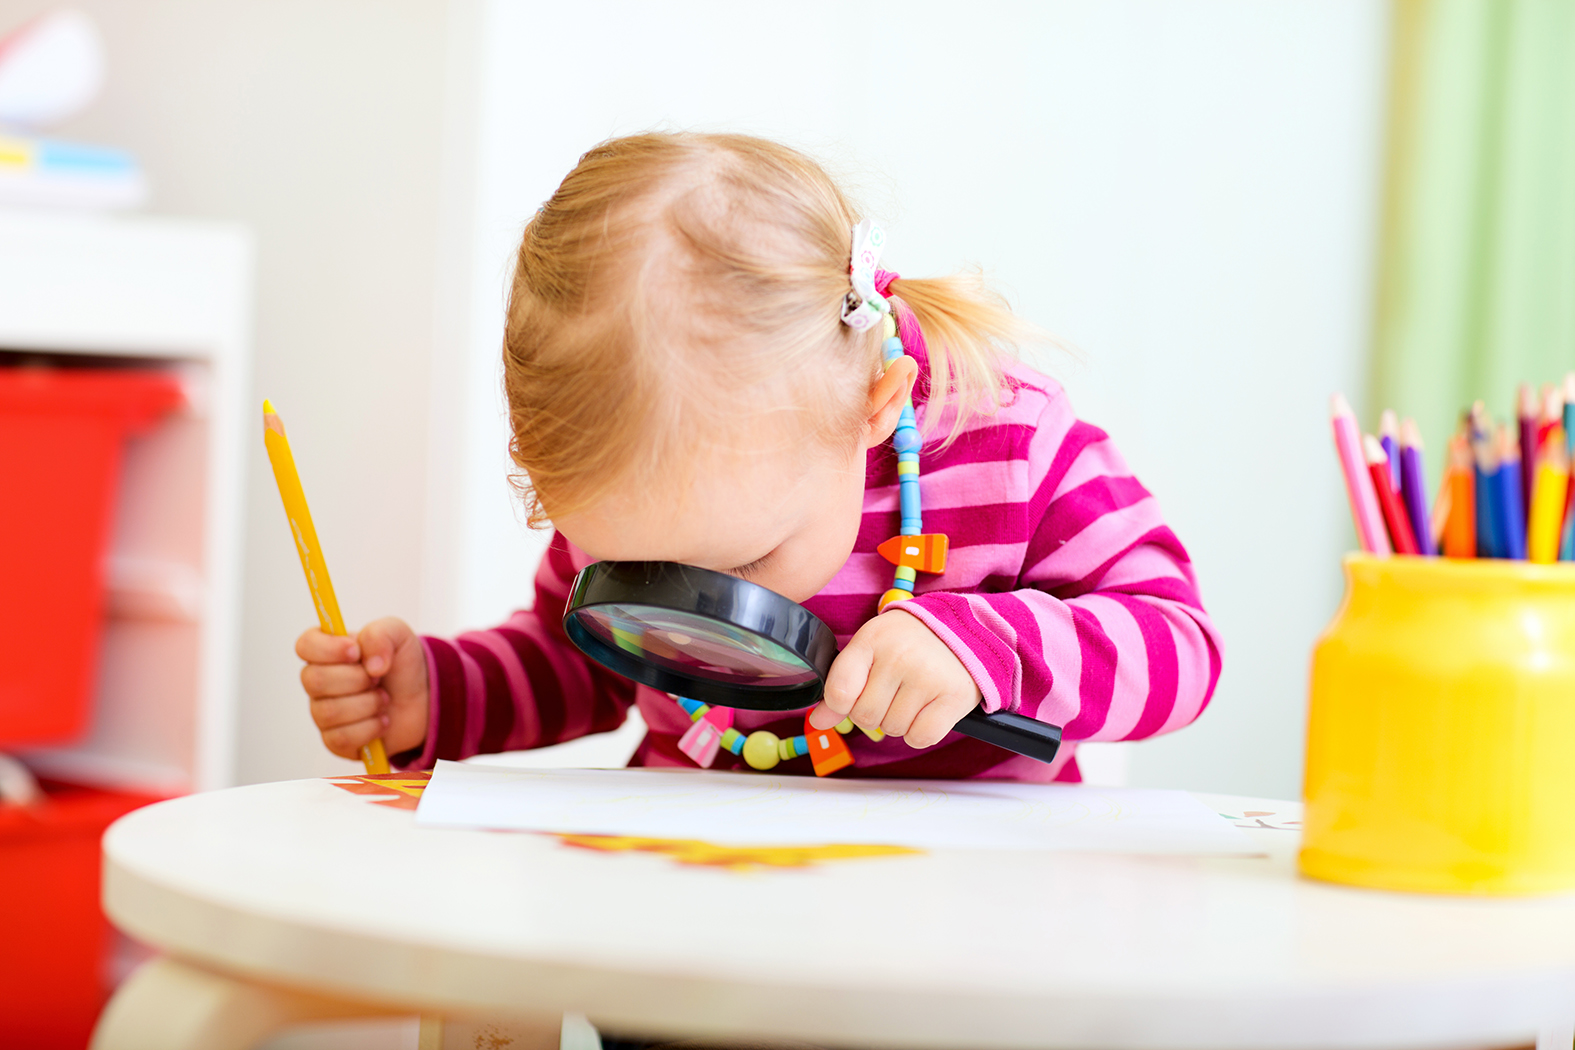 Ett förskolebarn i färgglad tröja sitter lutad över ett bord och tittar koncentrerat ner genom ett förstoringsglas.